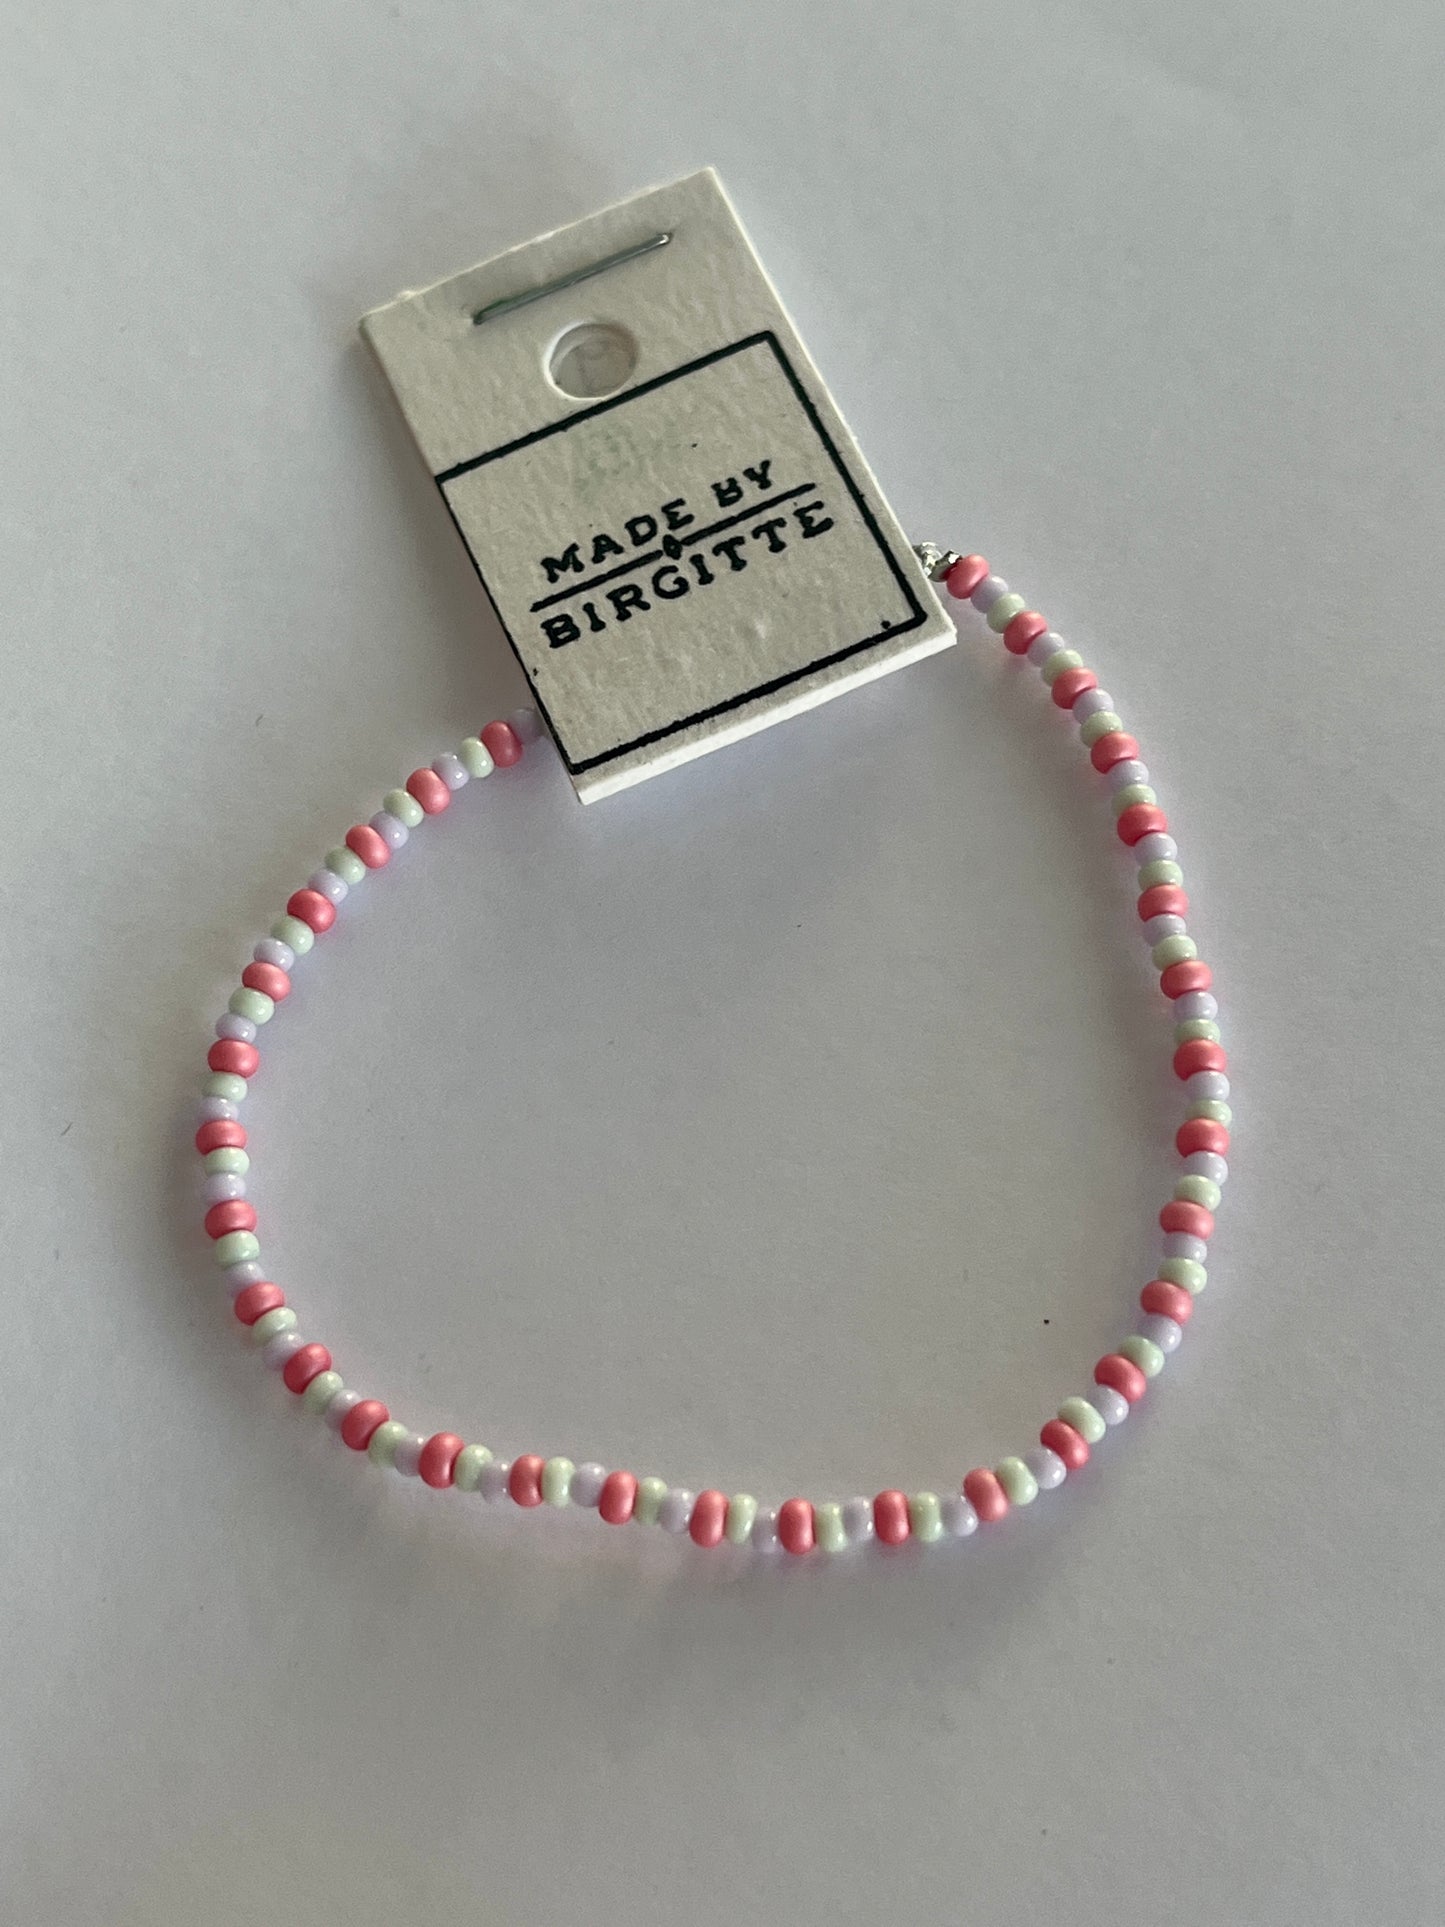 Bracelet - Made By Birgitte